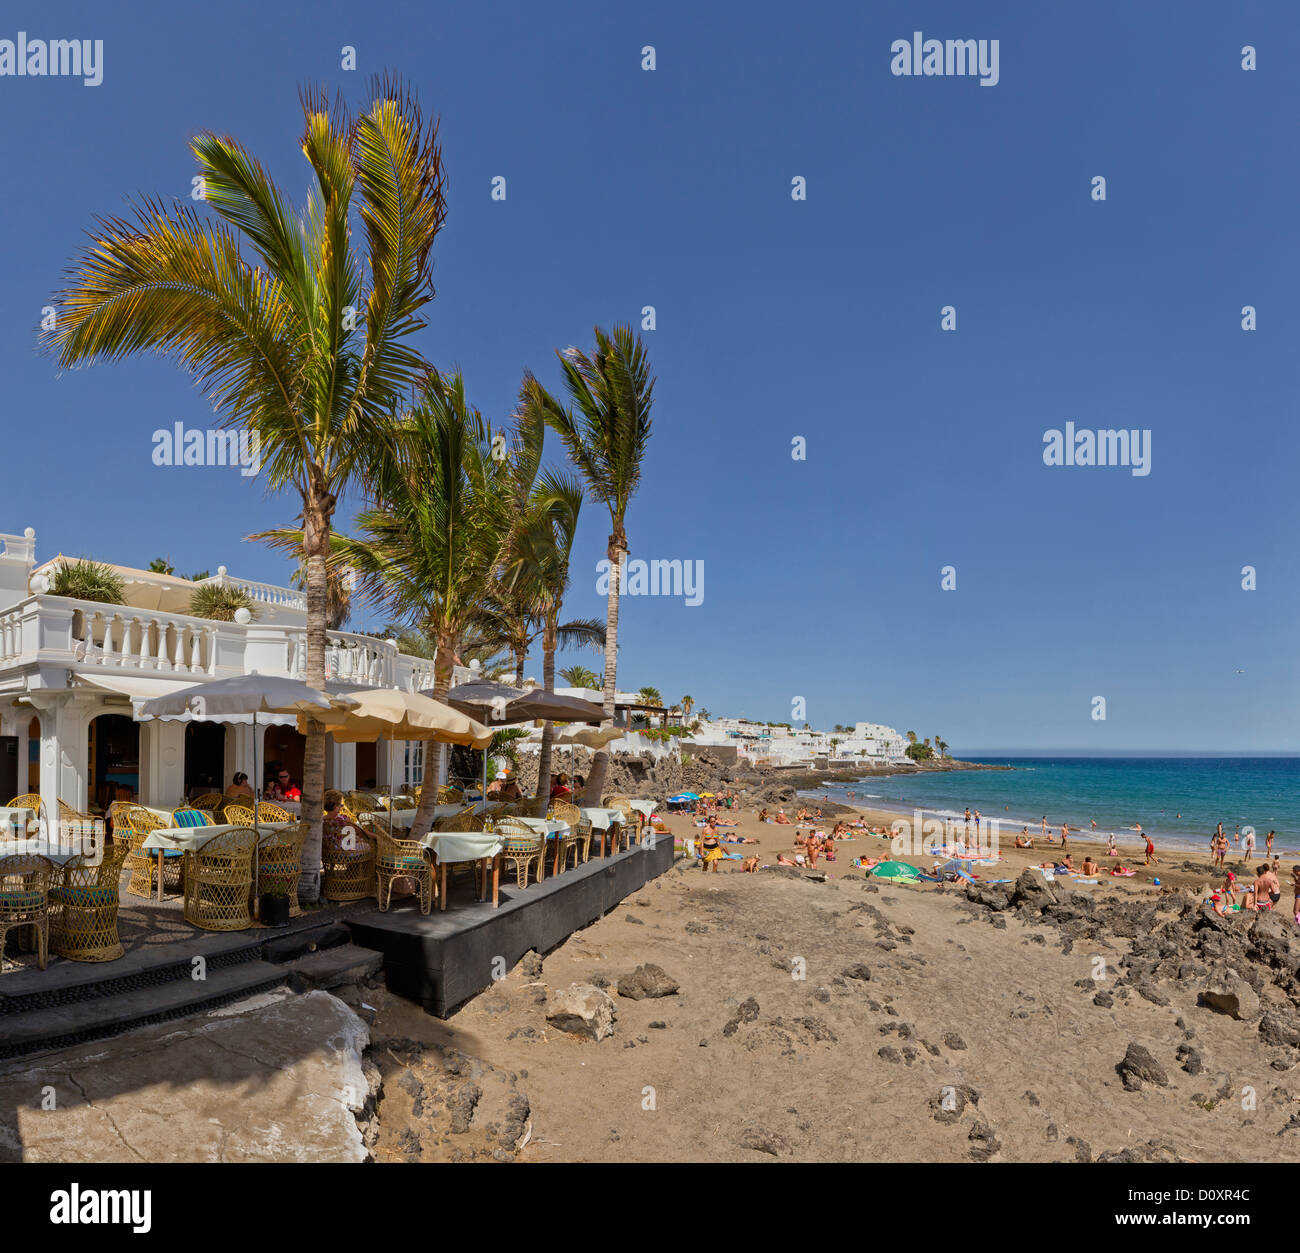 L'Espagne, Lanzarote, Puerto del Carmen, côté plage, café, ville, village, l'été, la plage, la mer, les gens, les îles Canaries, Banque D'Images